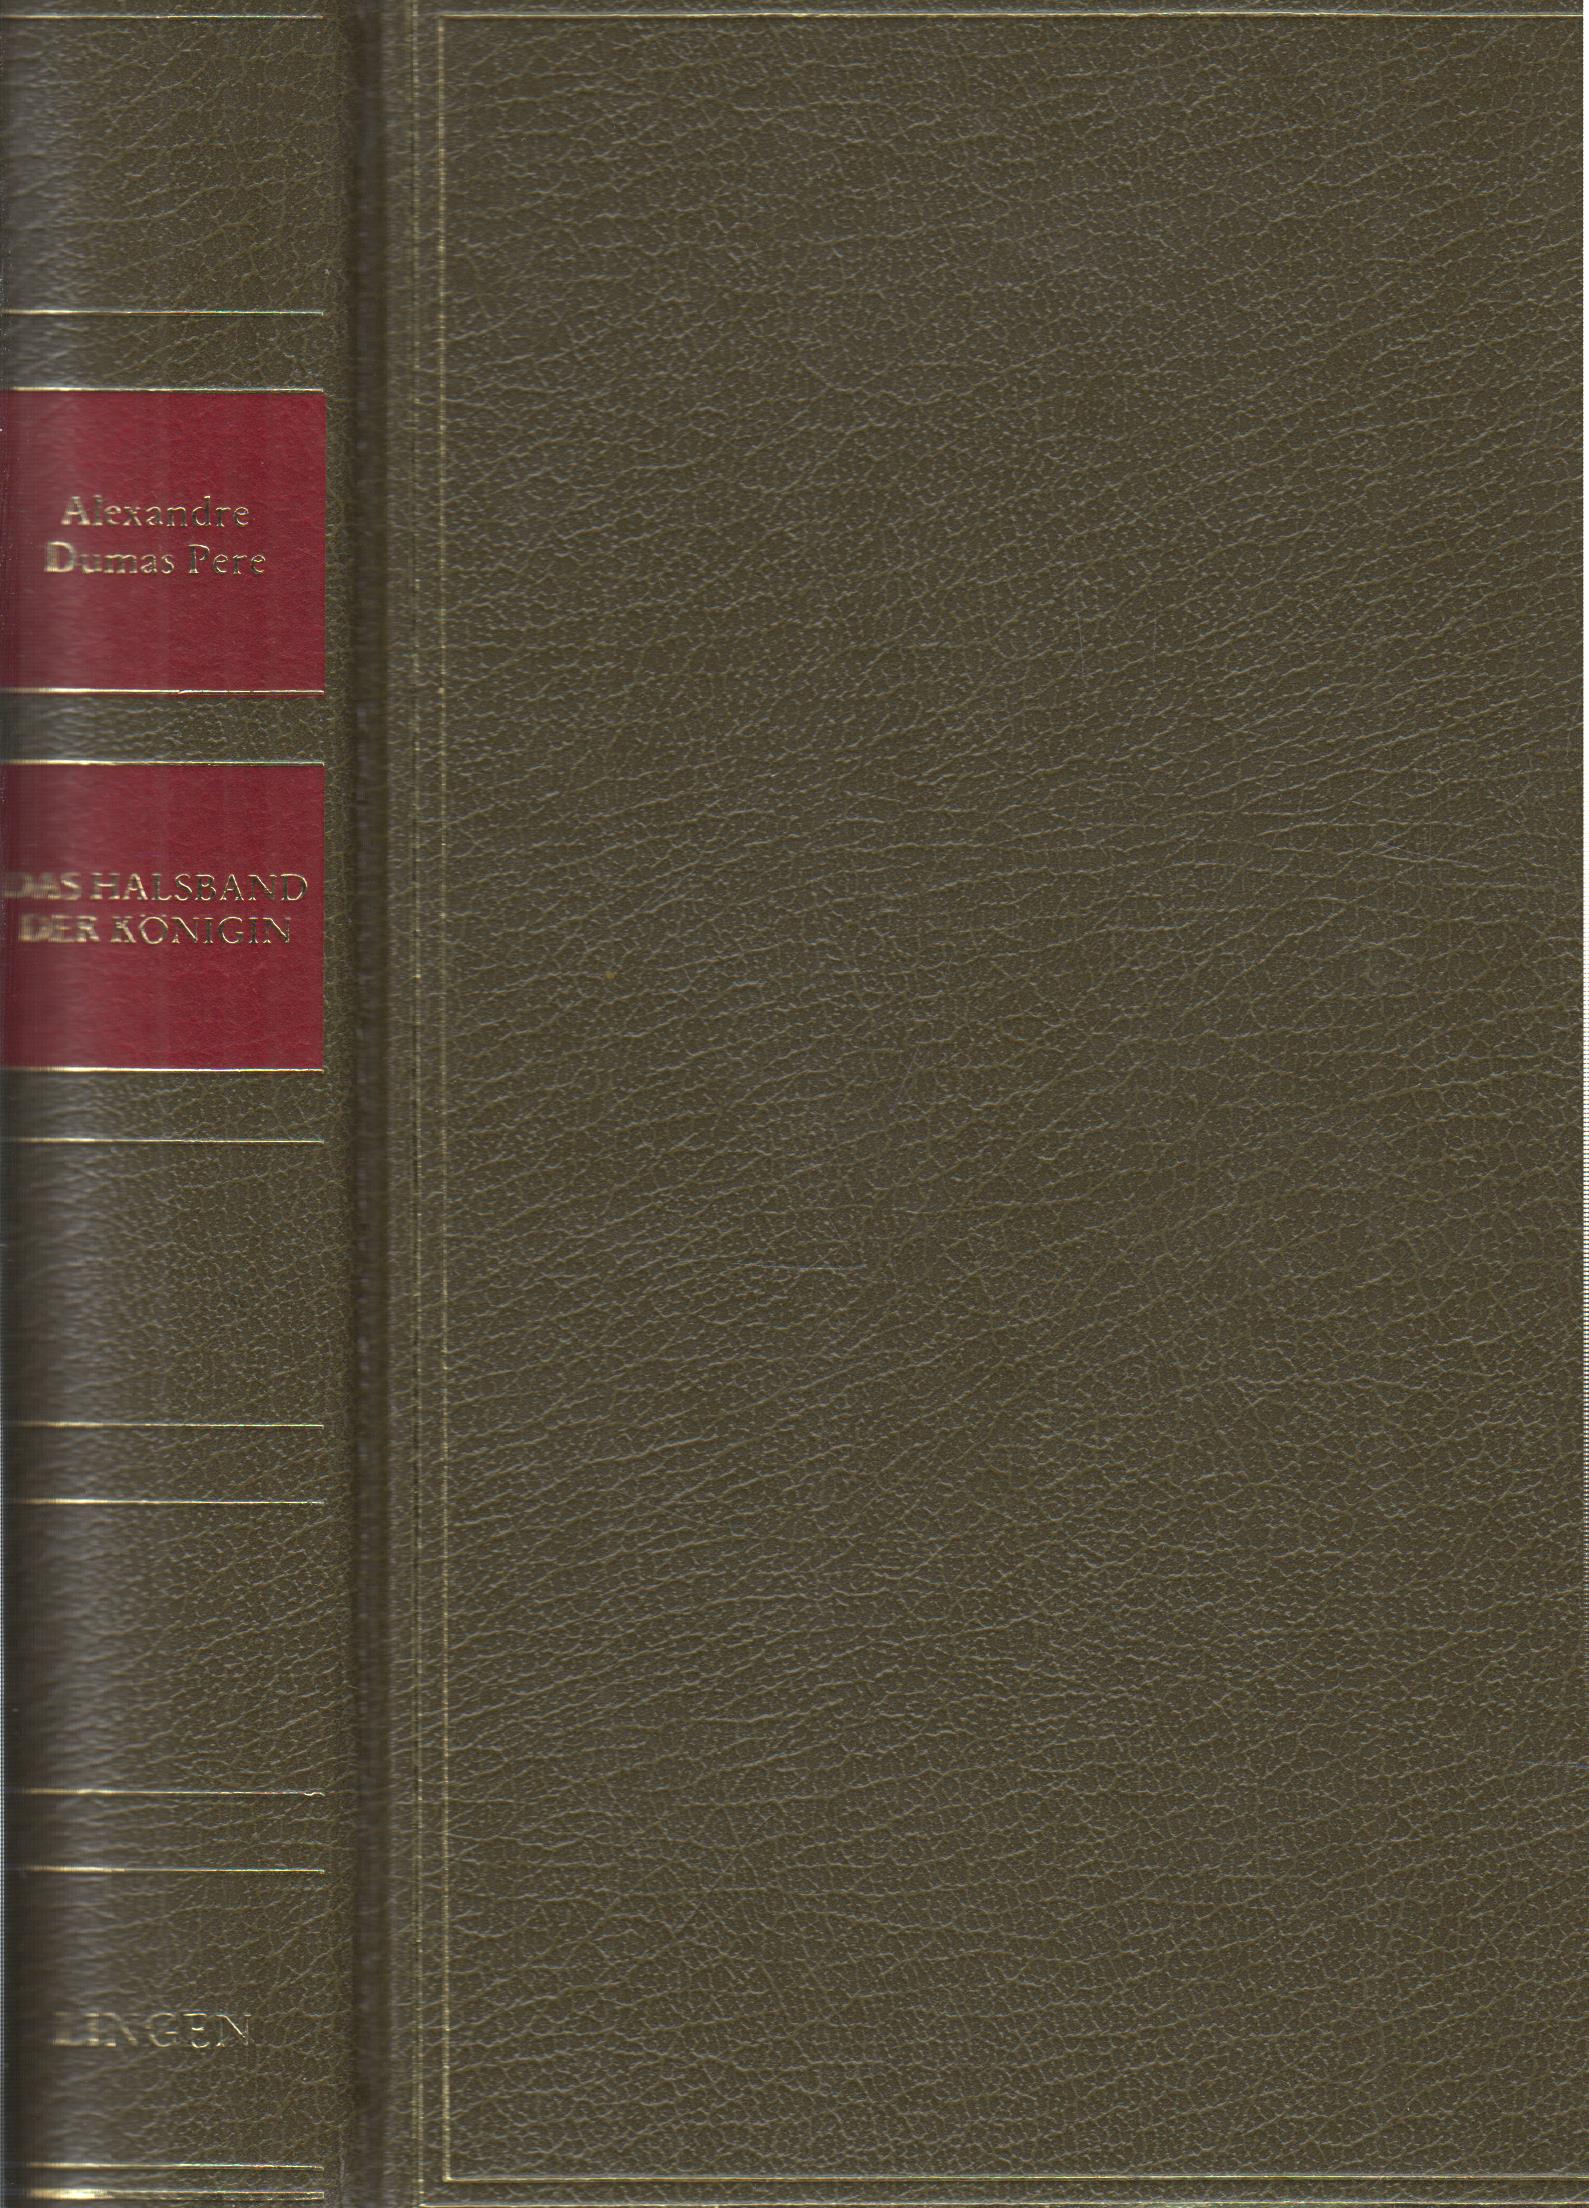 Das Halsband der Königin  1. Auflage - Dumas Pere, Alexandre